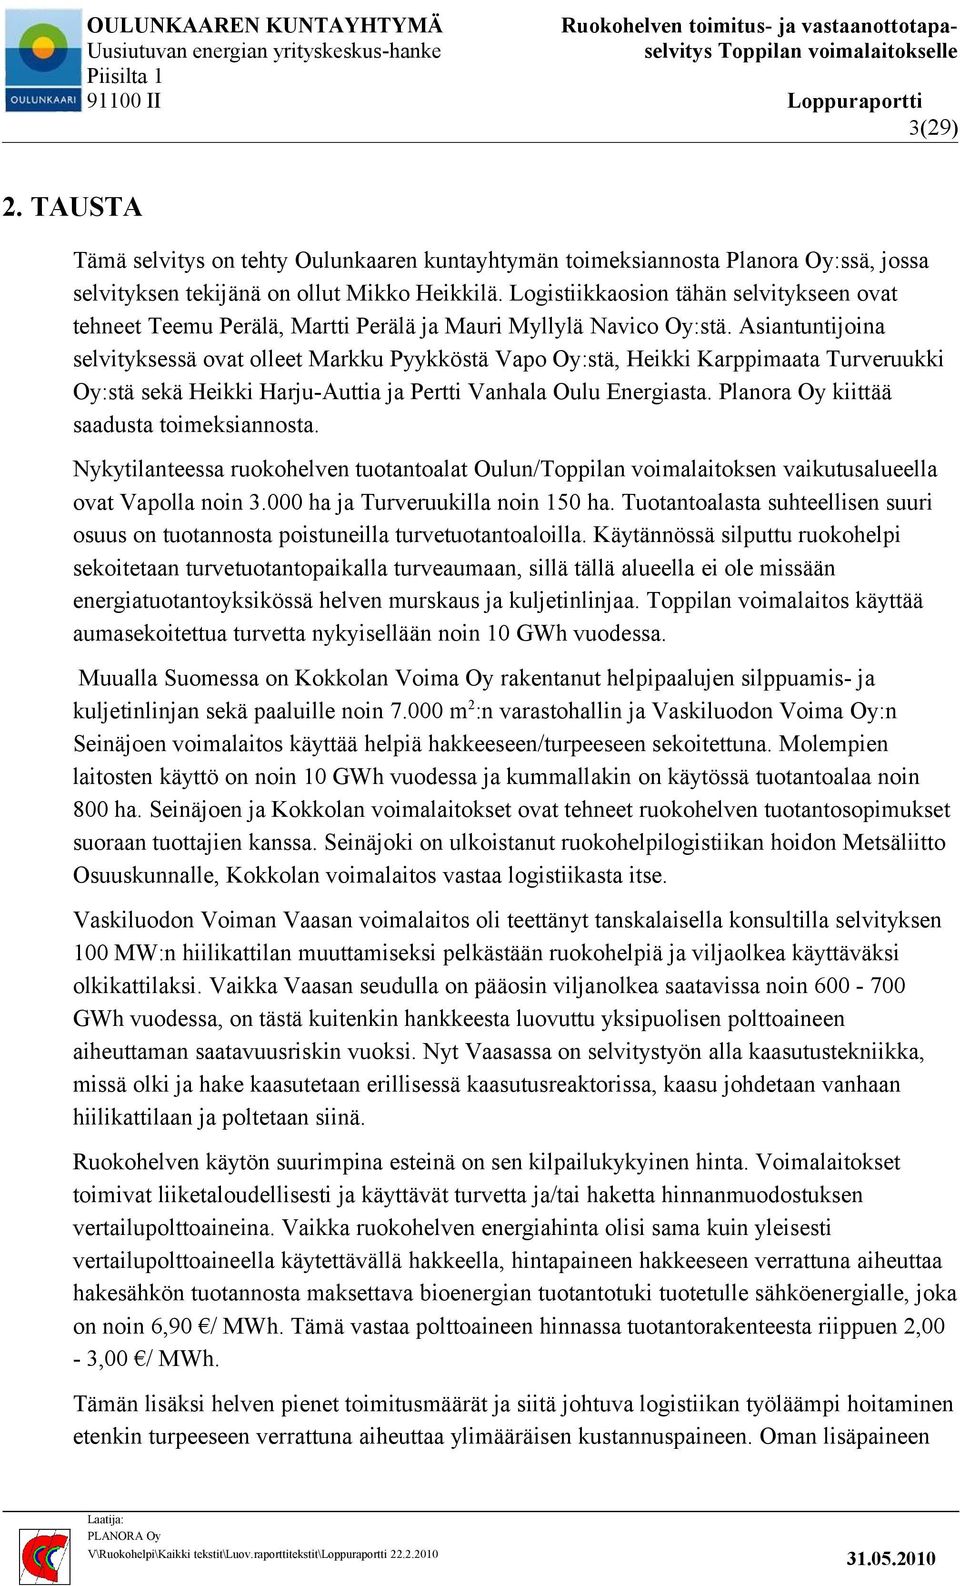 Asiantuntijoina selvityksessä ovat olleet Markku Pyykköstä Vapo Oy:stä, Heikki Karppimaata Turveruukki Oy:stä sekä Heikki Harju-Auttia ja Pertti Vanhala Oulu Energiasta.